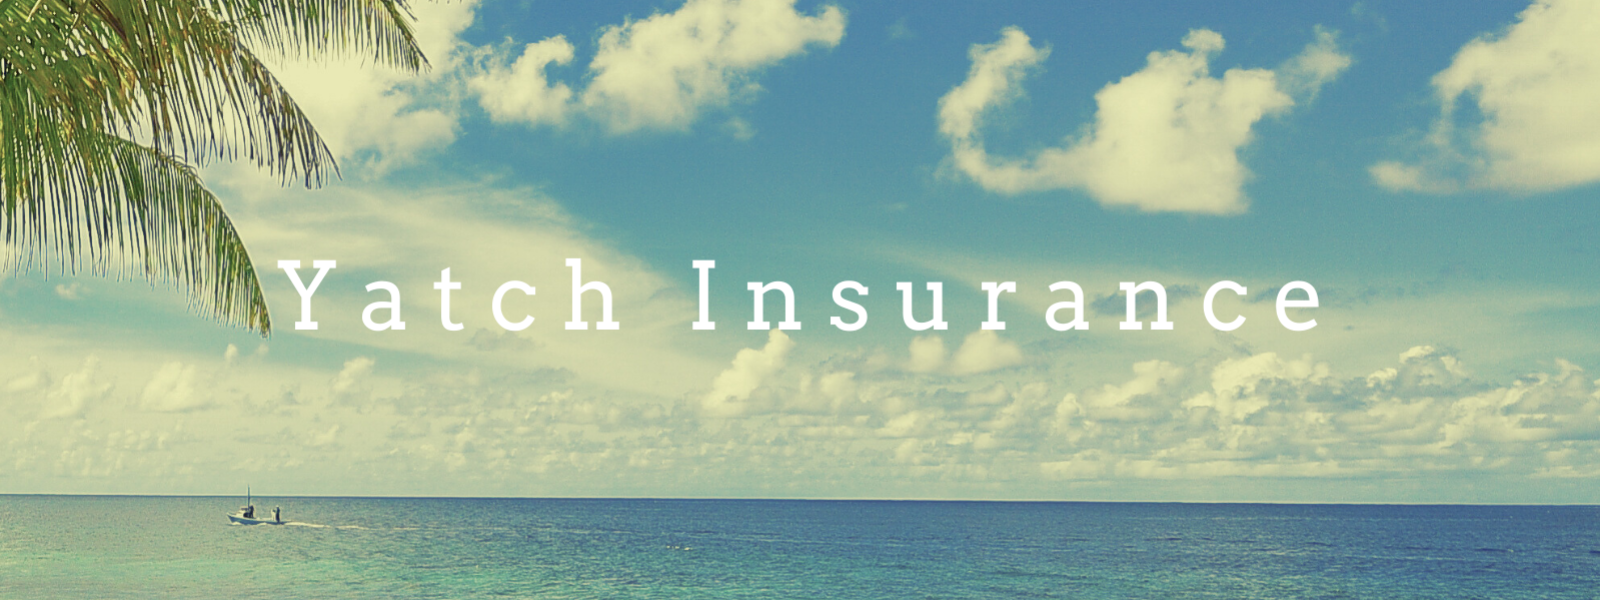 Yatch Insurance